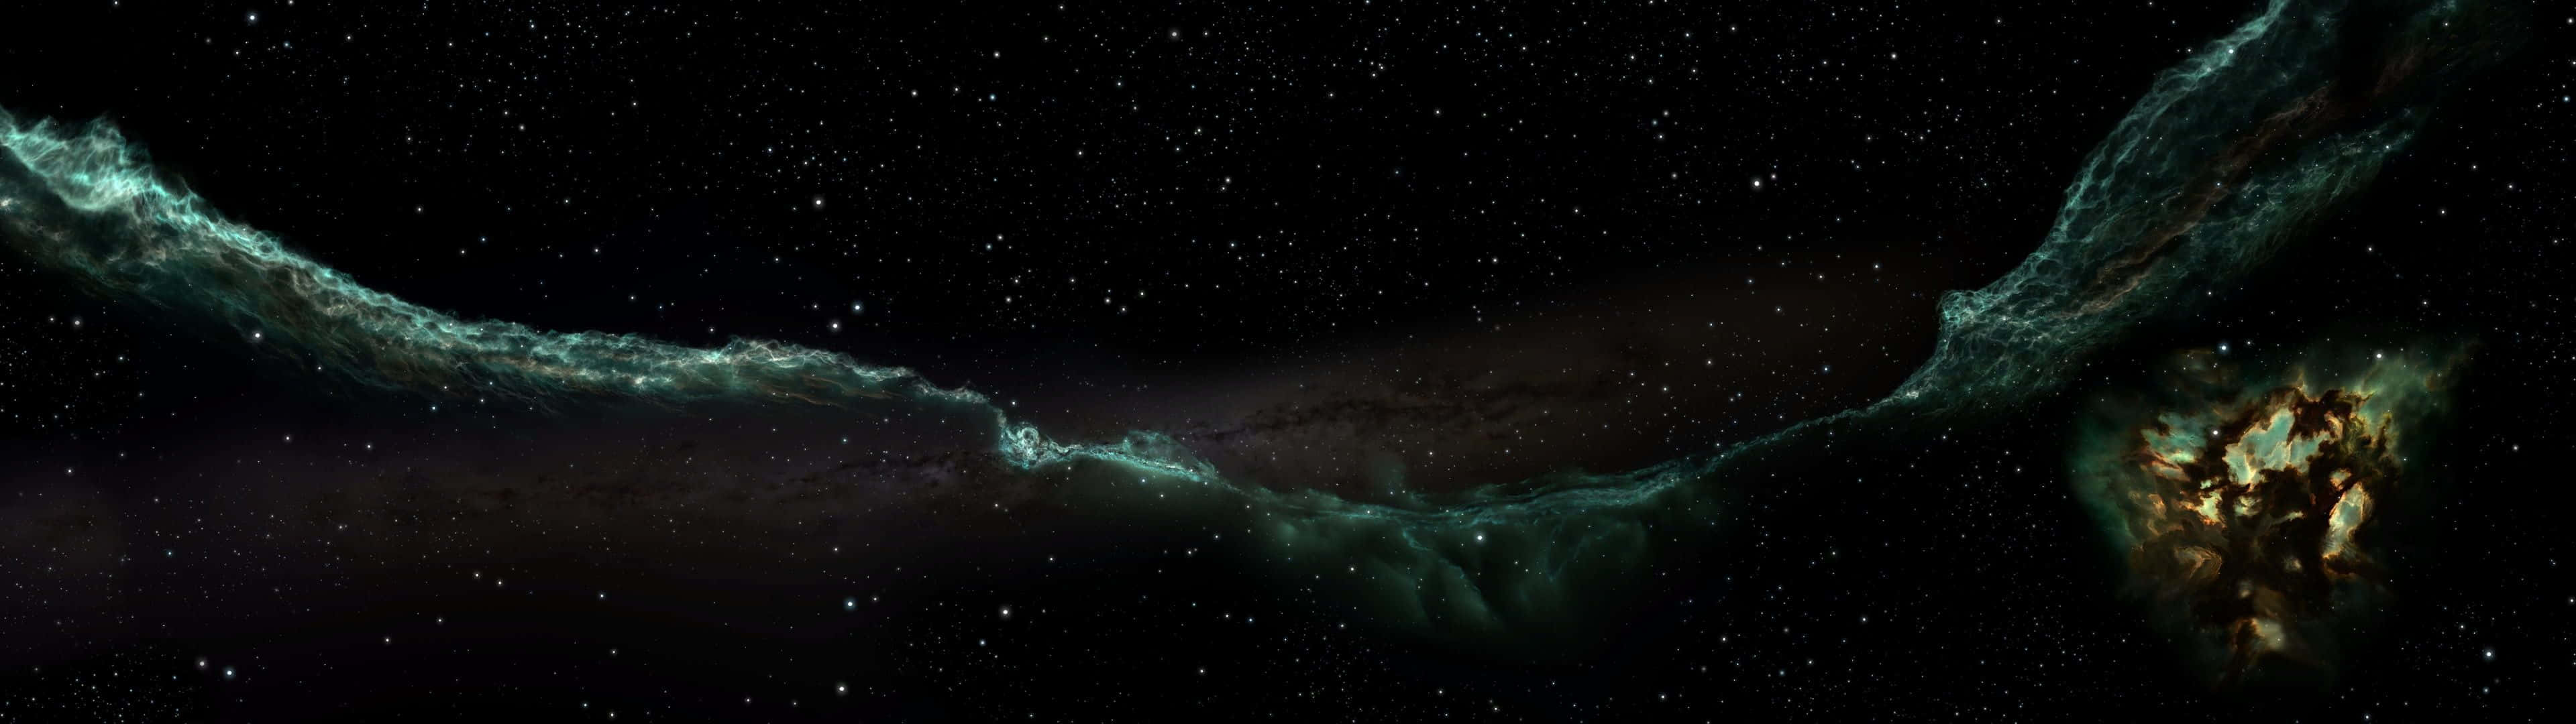 Unavista Incredibile Di Una Nebulosa Galattica Sfondo